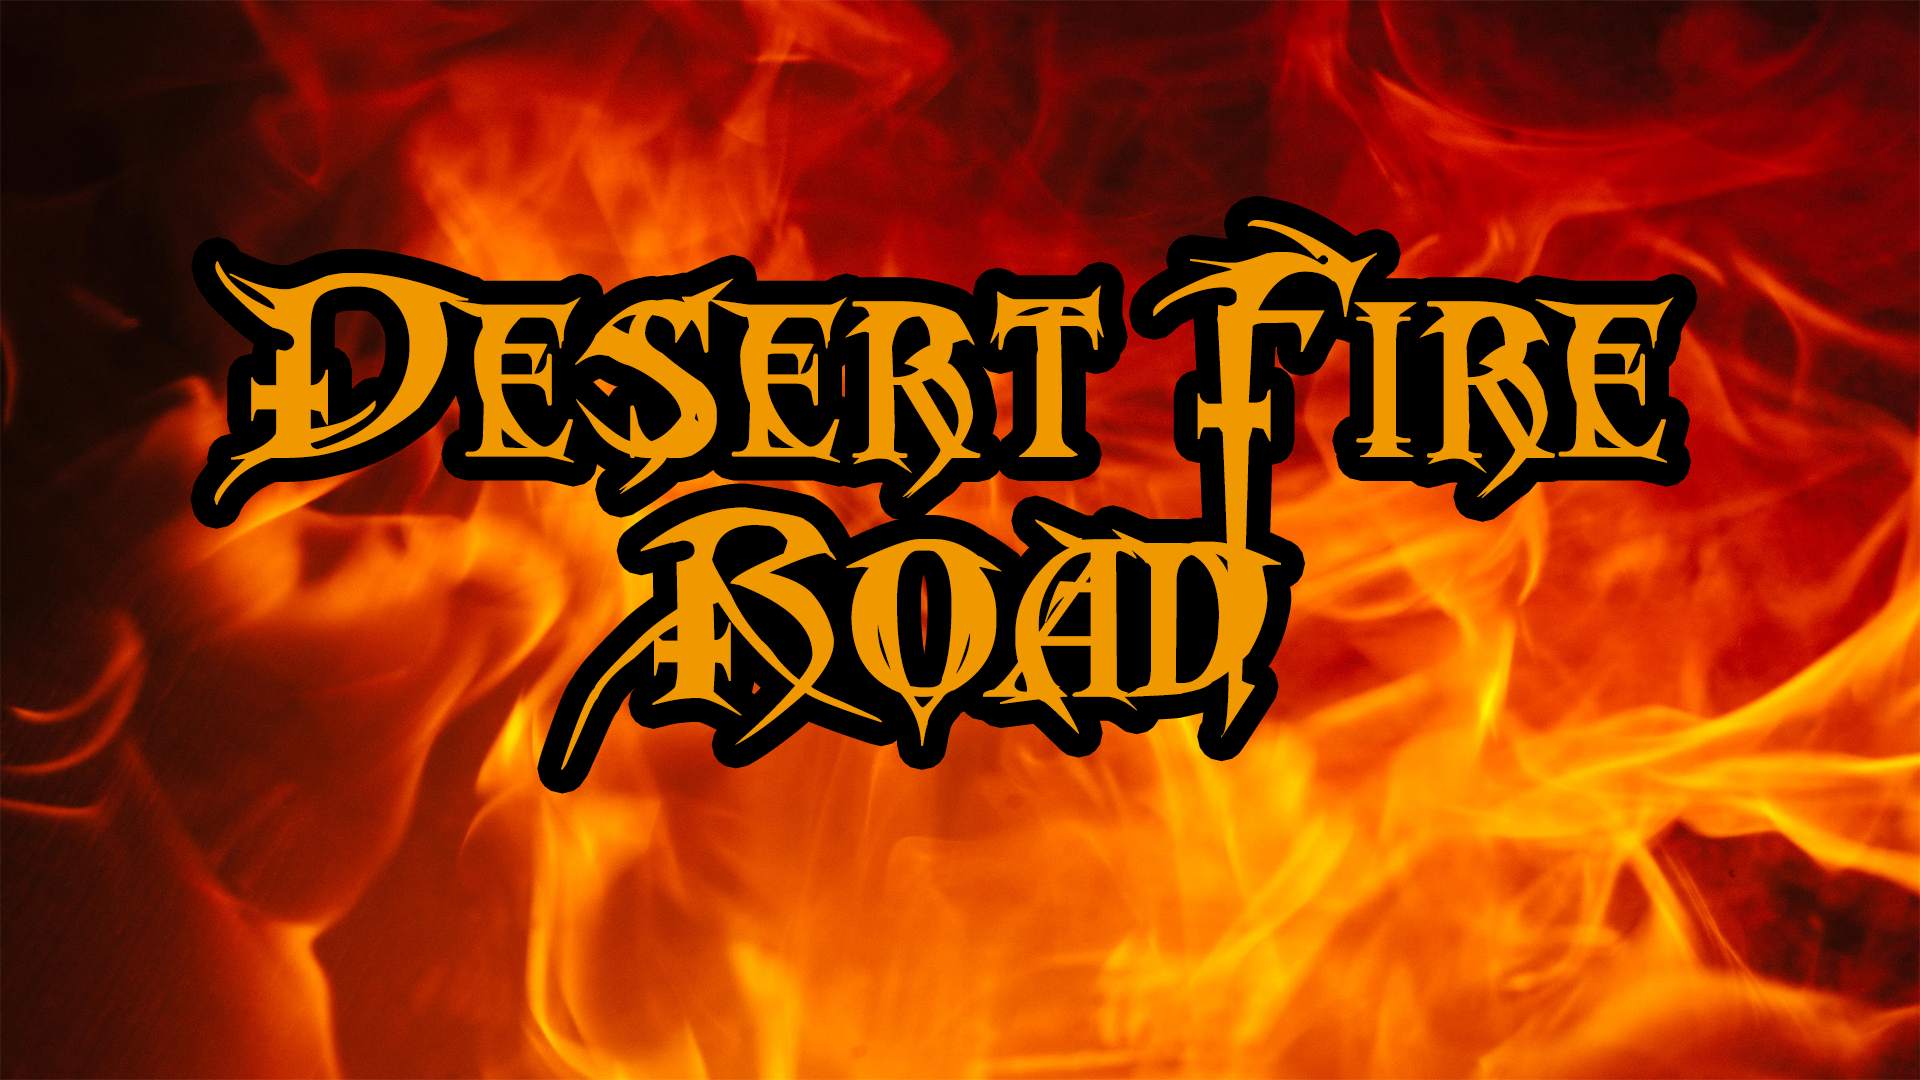 Desert Fire Road